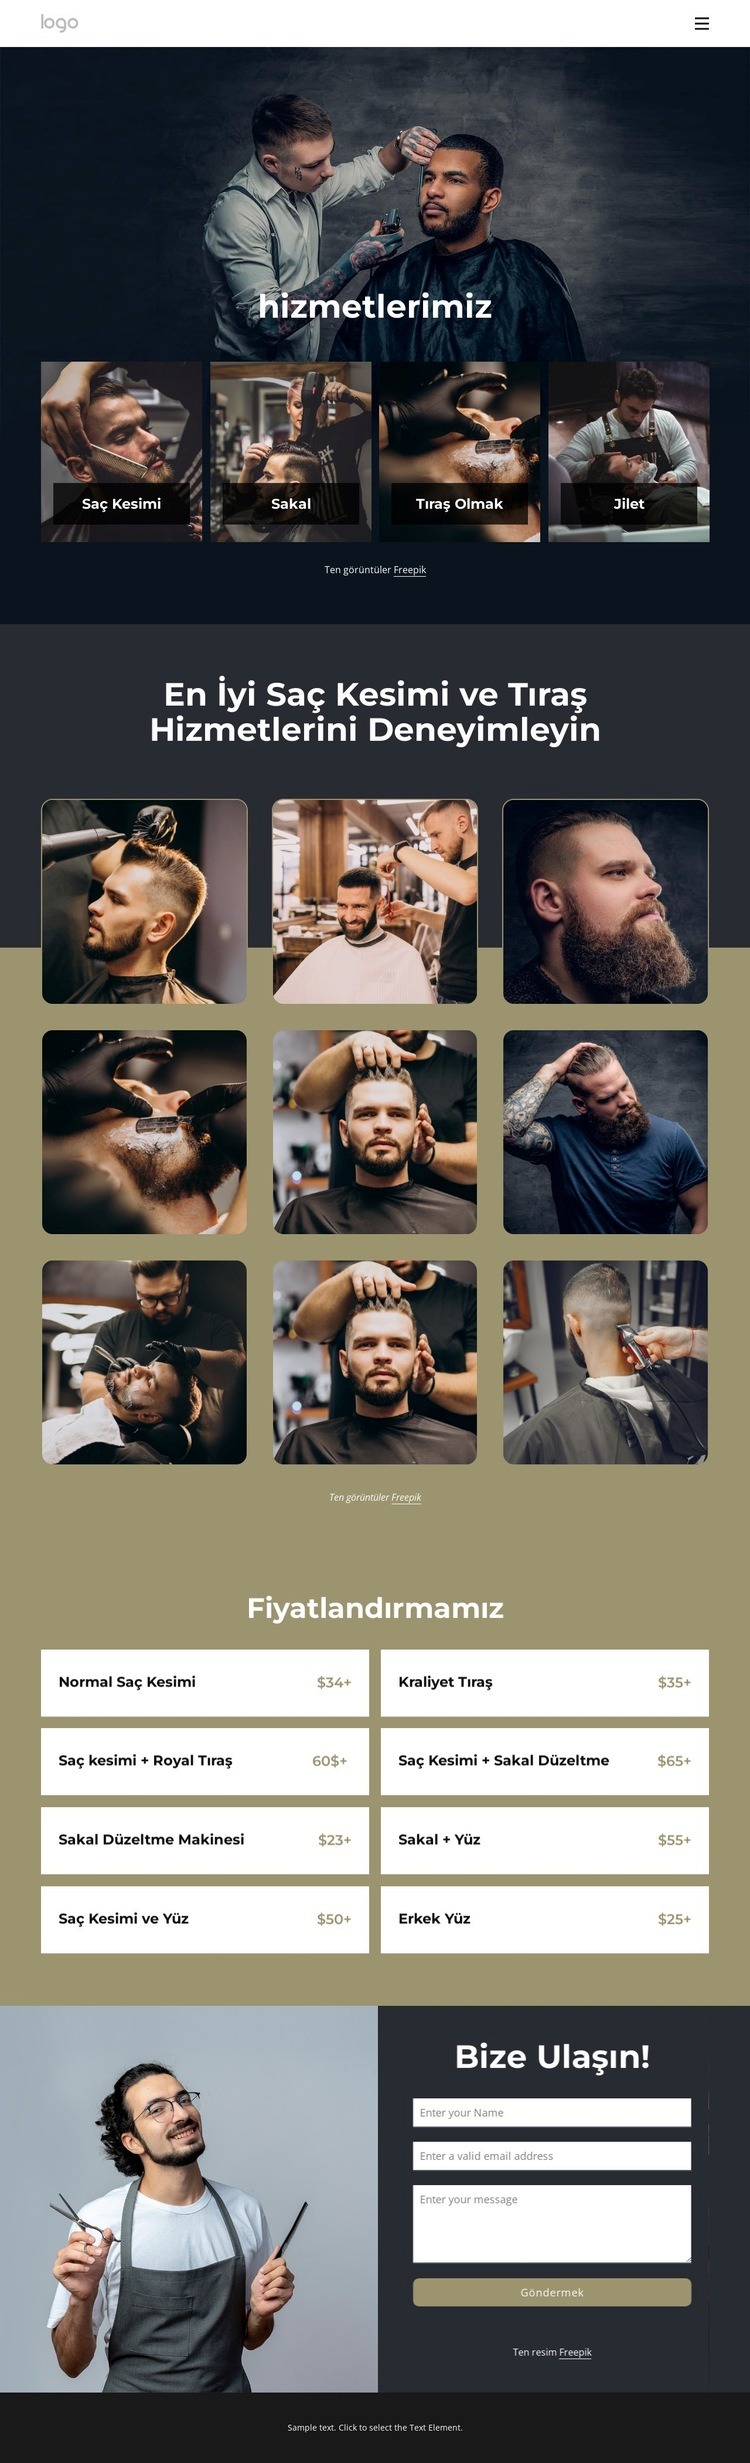 En iyi saç kesimi ve tıraş hizmetleri Web Sitesi Mockup'ı